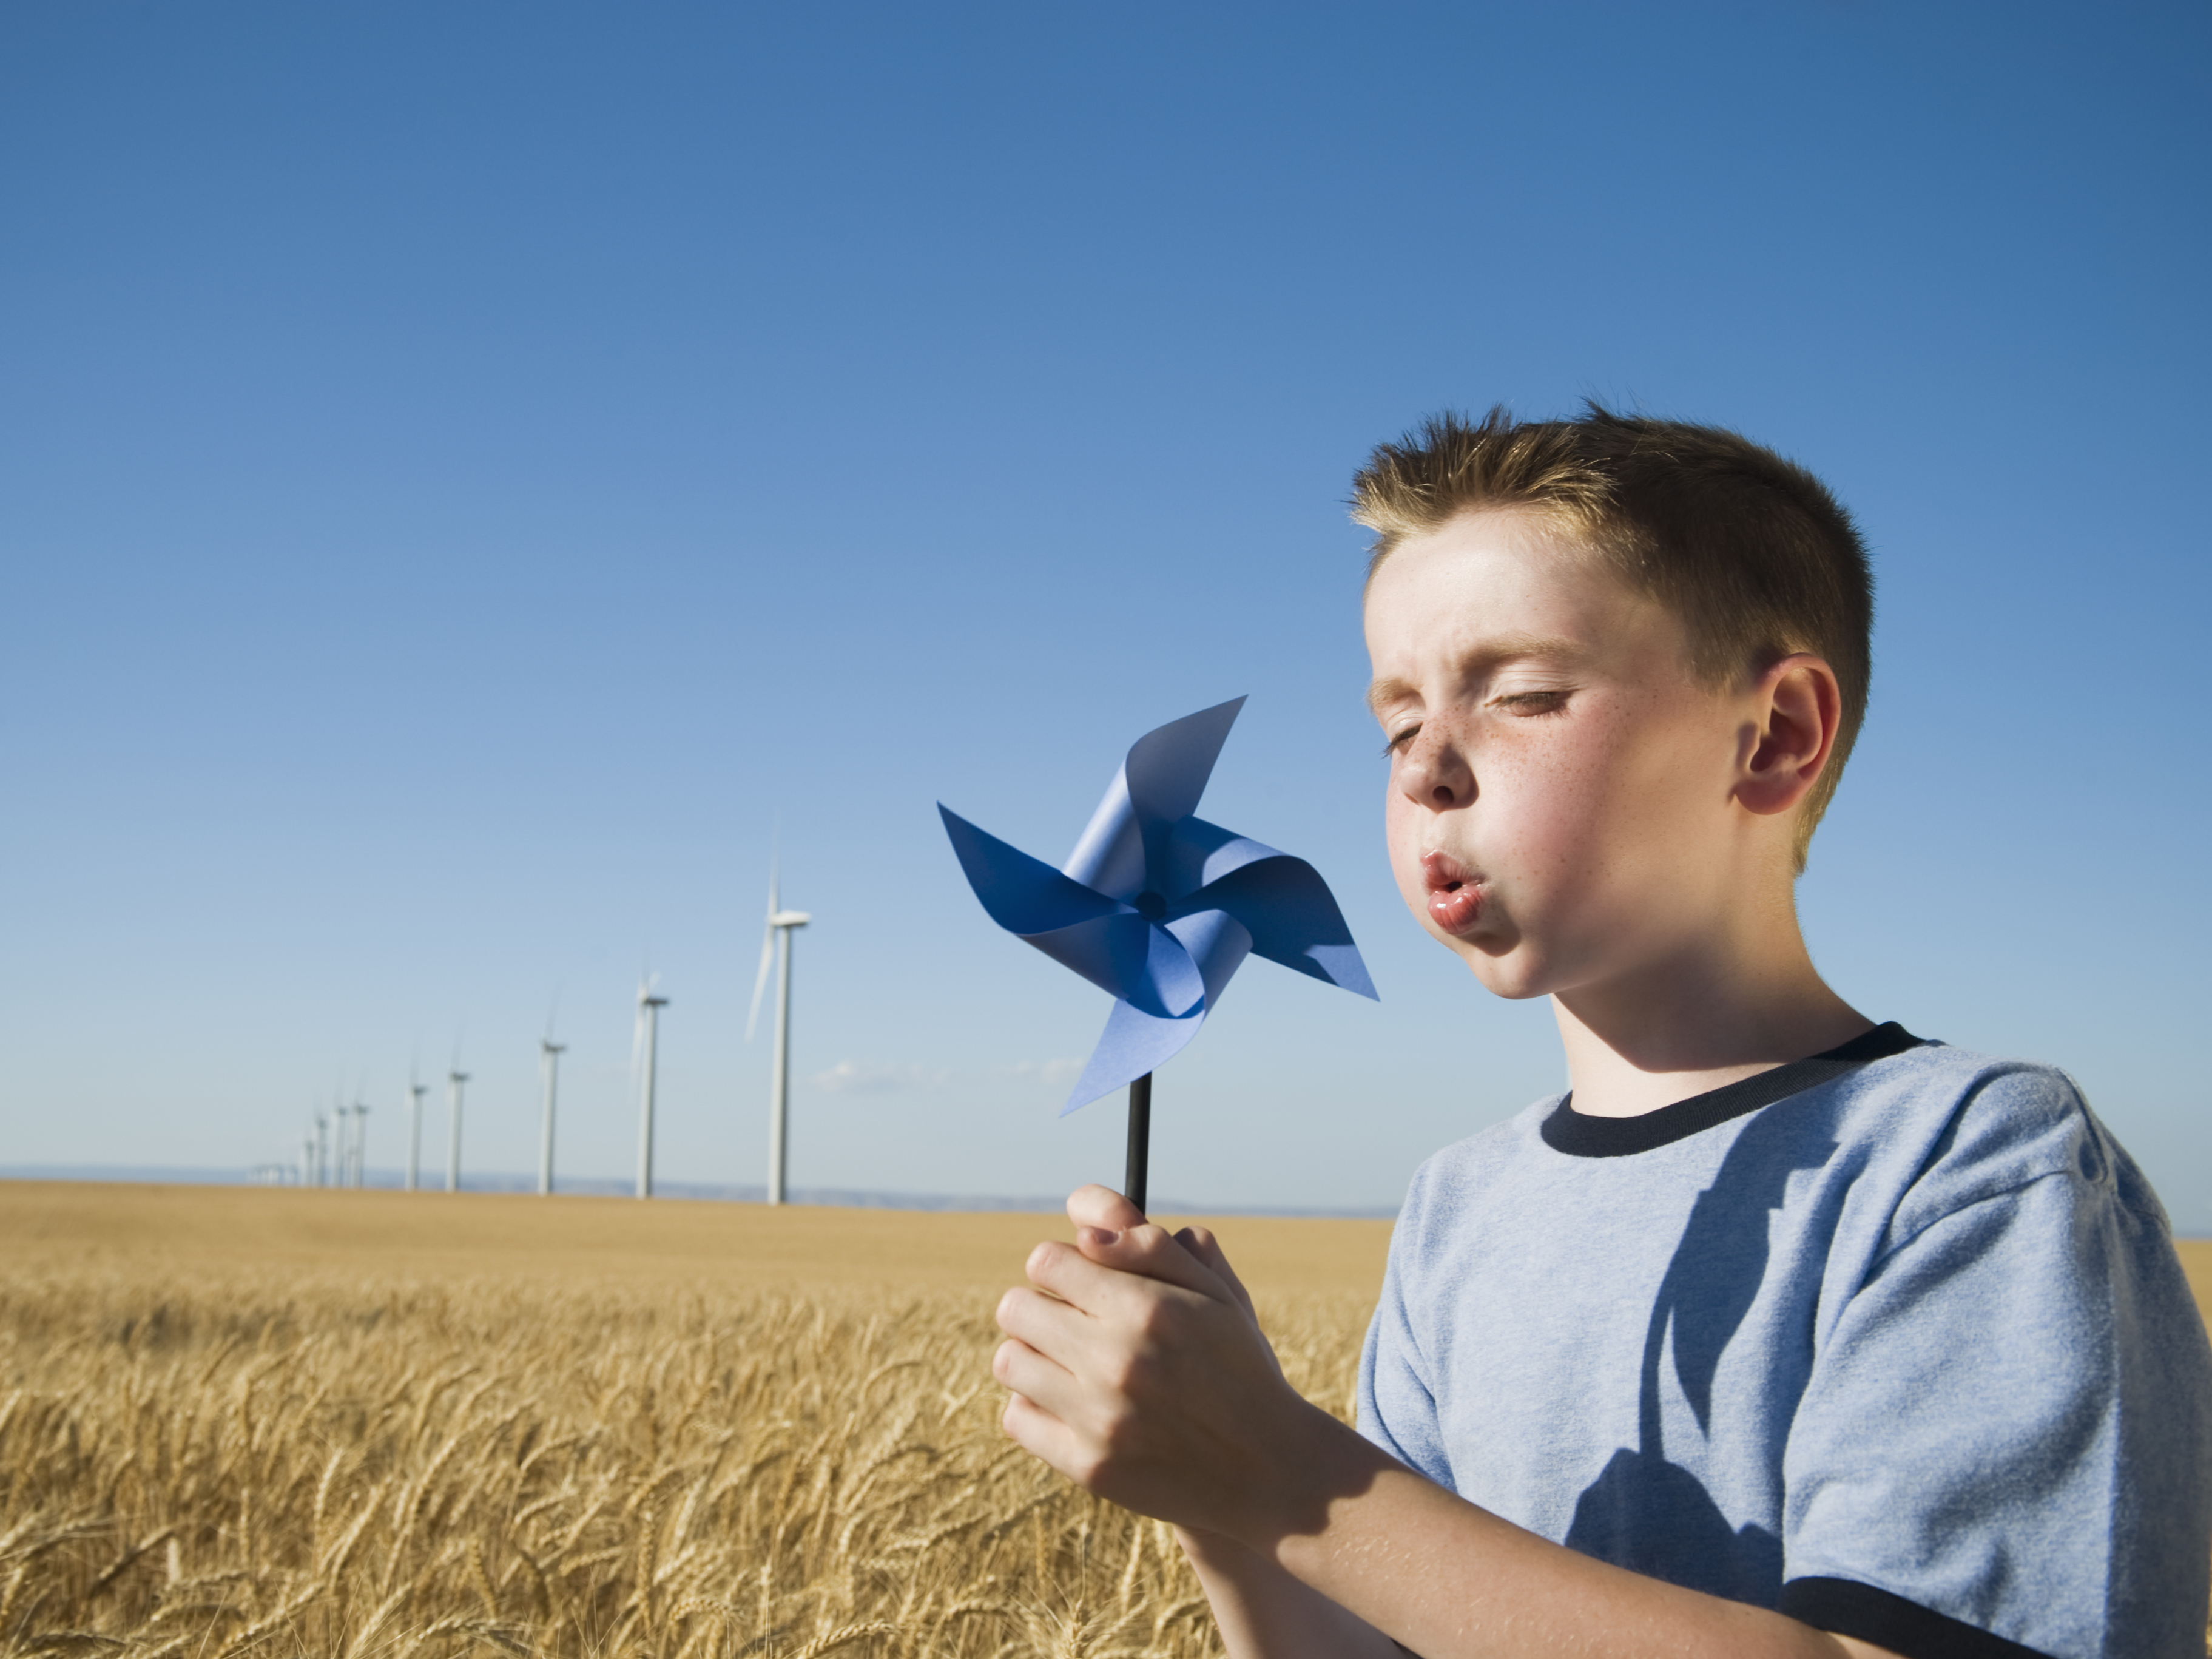 Boy blowing a windmill in a field